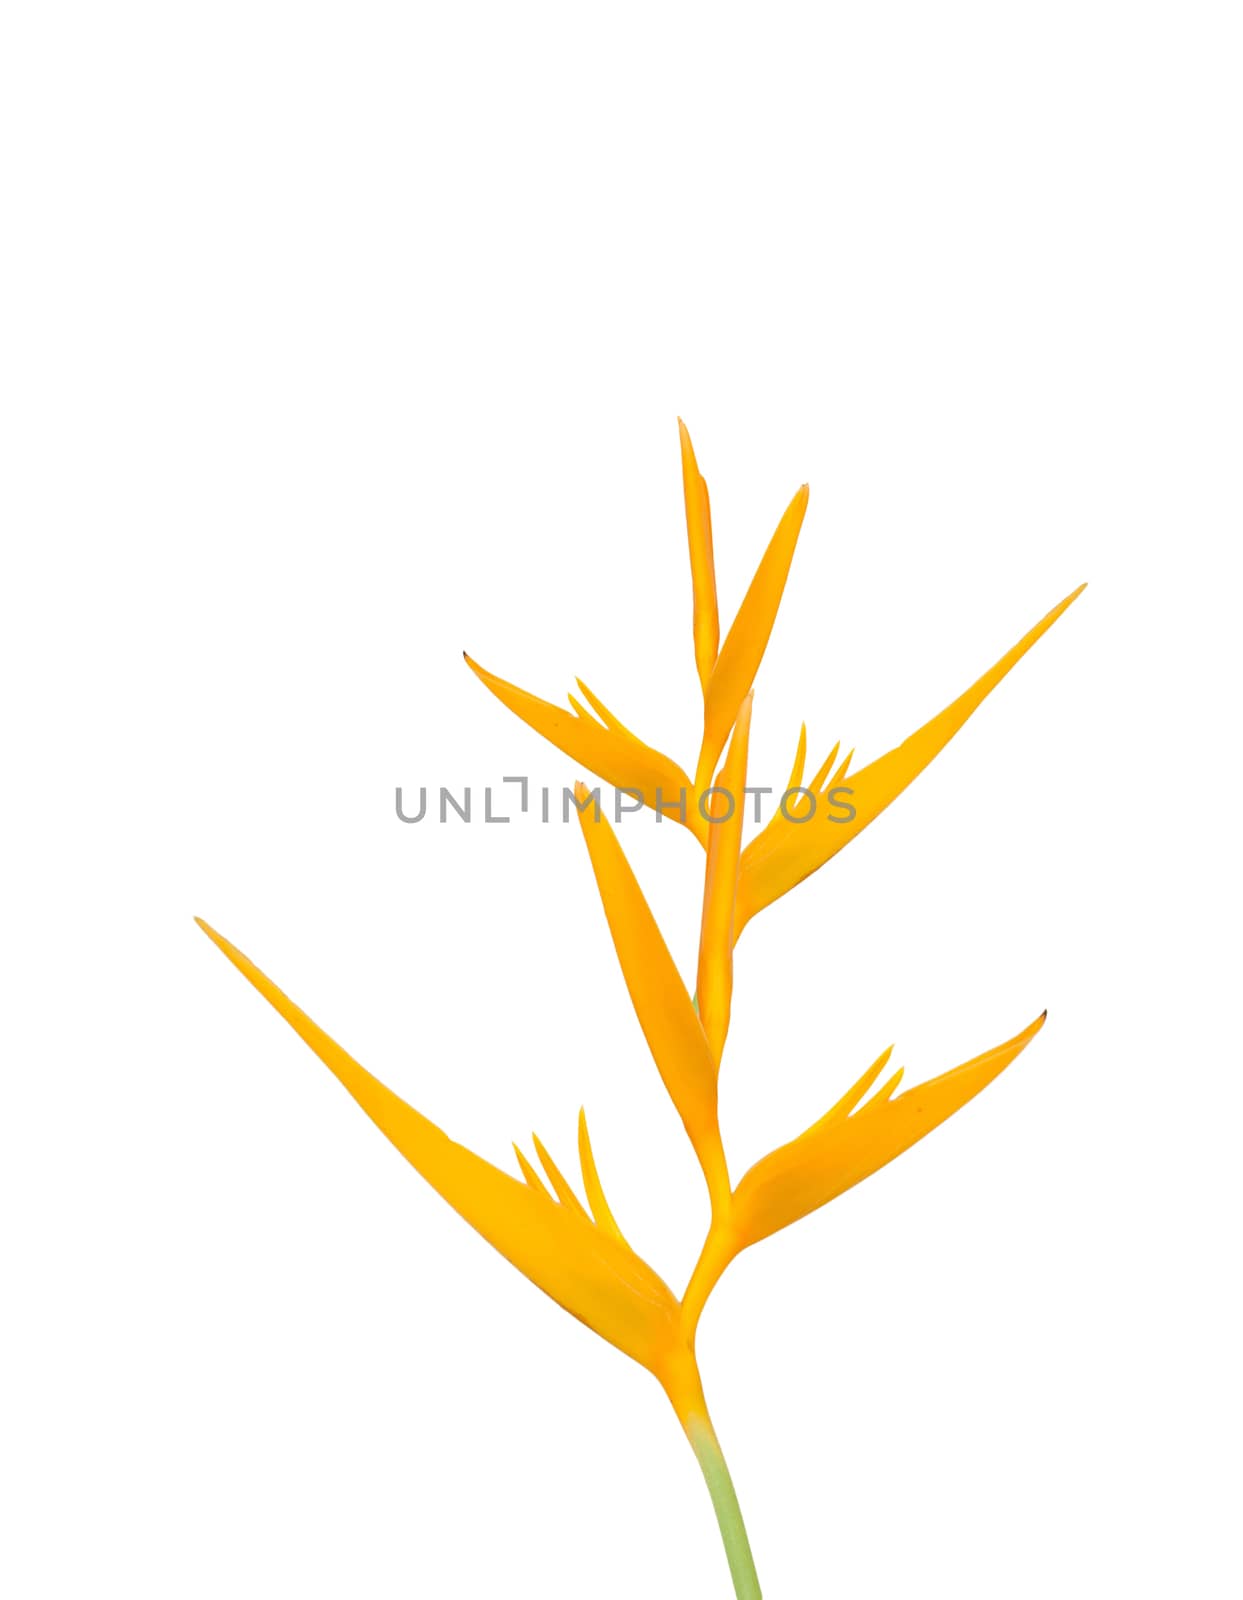 Yellow bird of paradise isolated on white background